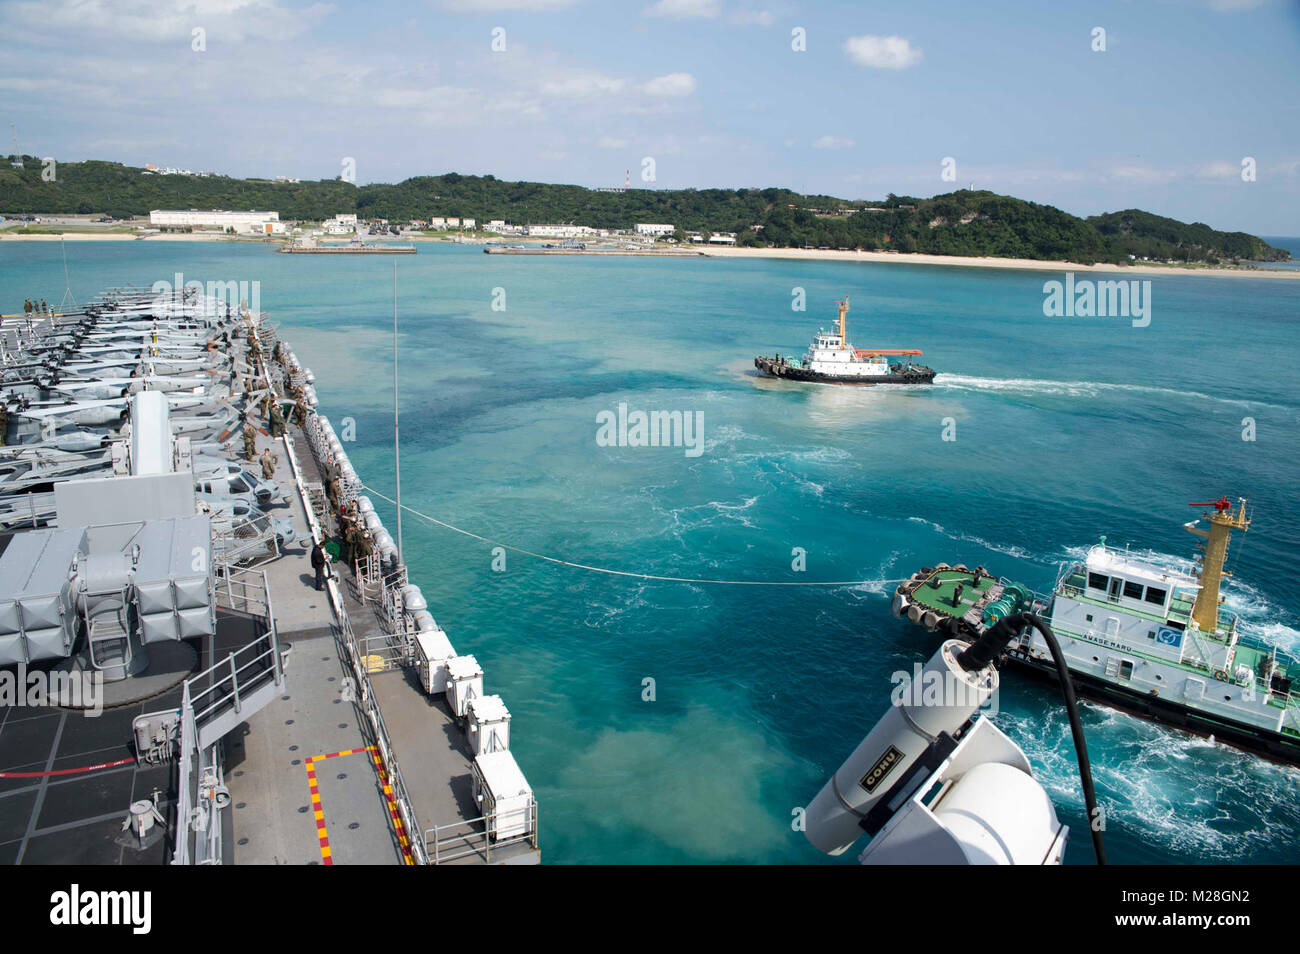 WHITE BEACH, Okinawa (Feb. 2, 2018) eine Tug Boat führt den Amphibious Assault ship USS BONHOMME RICHARD (LHD 6) weg vom Pier während des Schiffes Abfahrt vom Weißen Strand Marinestützpunkt, Okinawa. Bonhomme Richard ist in den Indo-Asia-Pazifik-Region als Teil einer regelmäßigen Patrouillen- und bietet eine schnelle Reaktionsfähigkeit im Falle eines regionalen Kontingenz oder Naturkatastrophen. (U.S. Marine Stockfoto